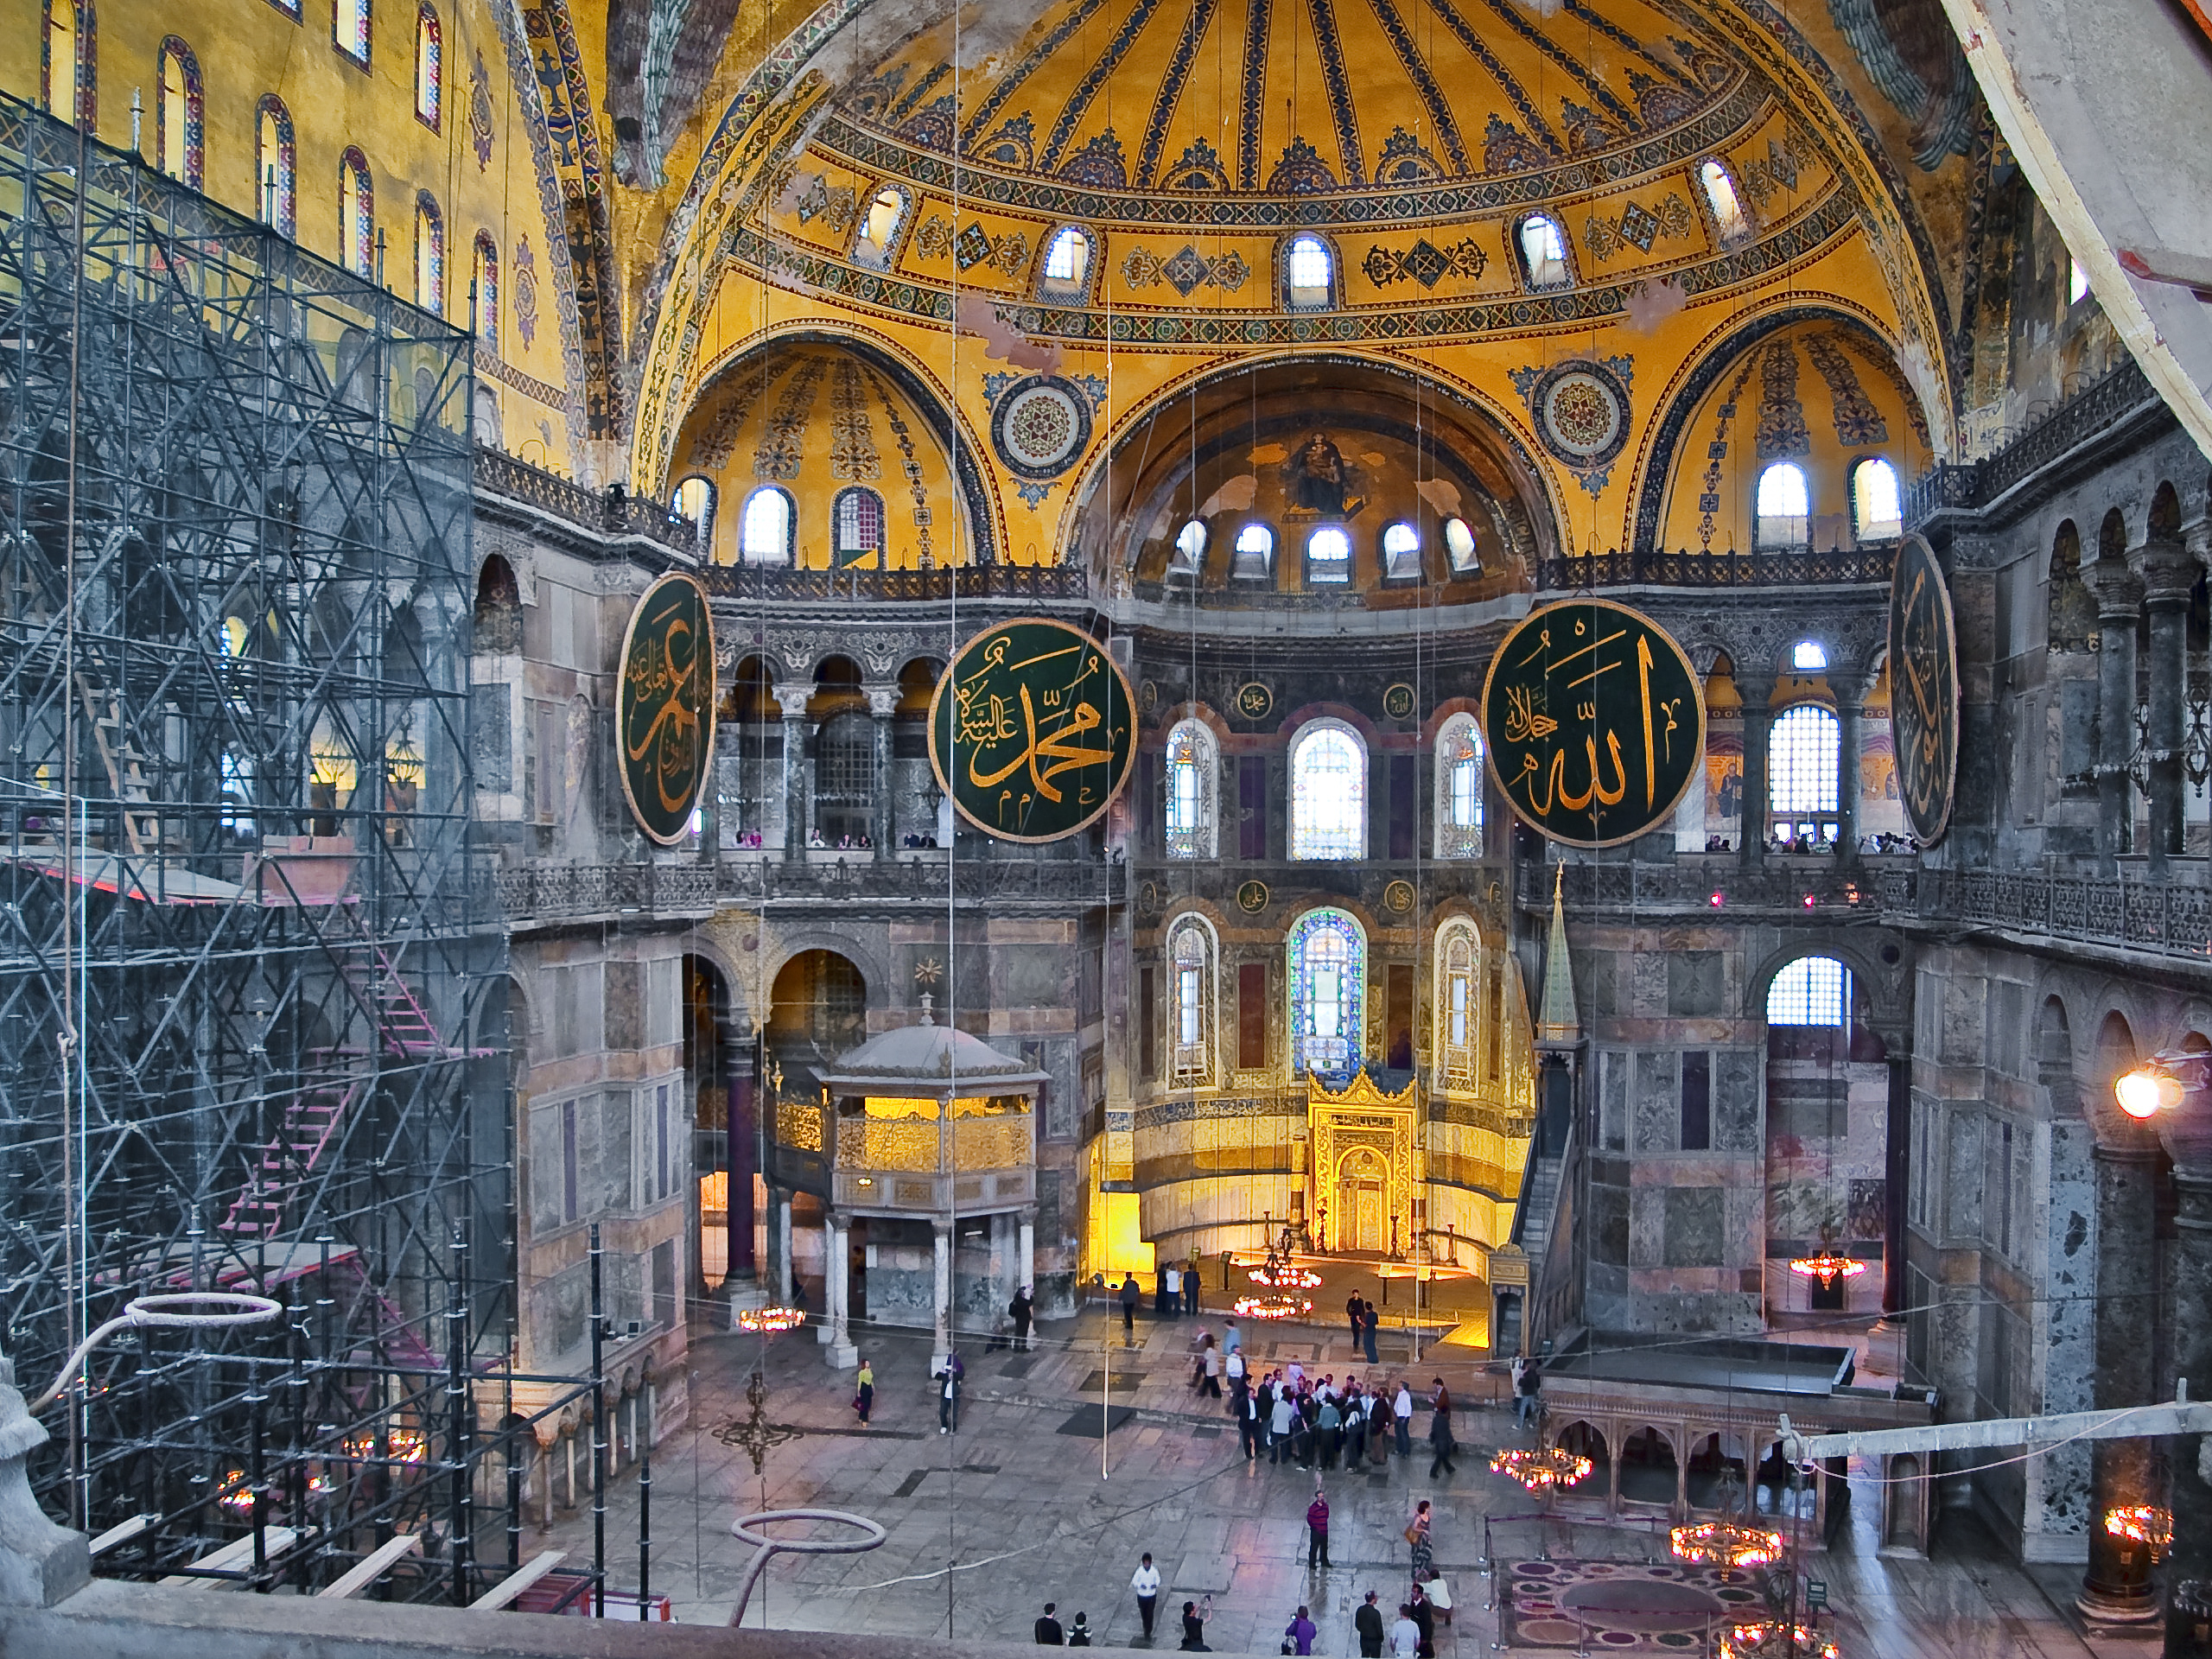 Interior of Hagia Sophia.